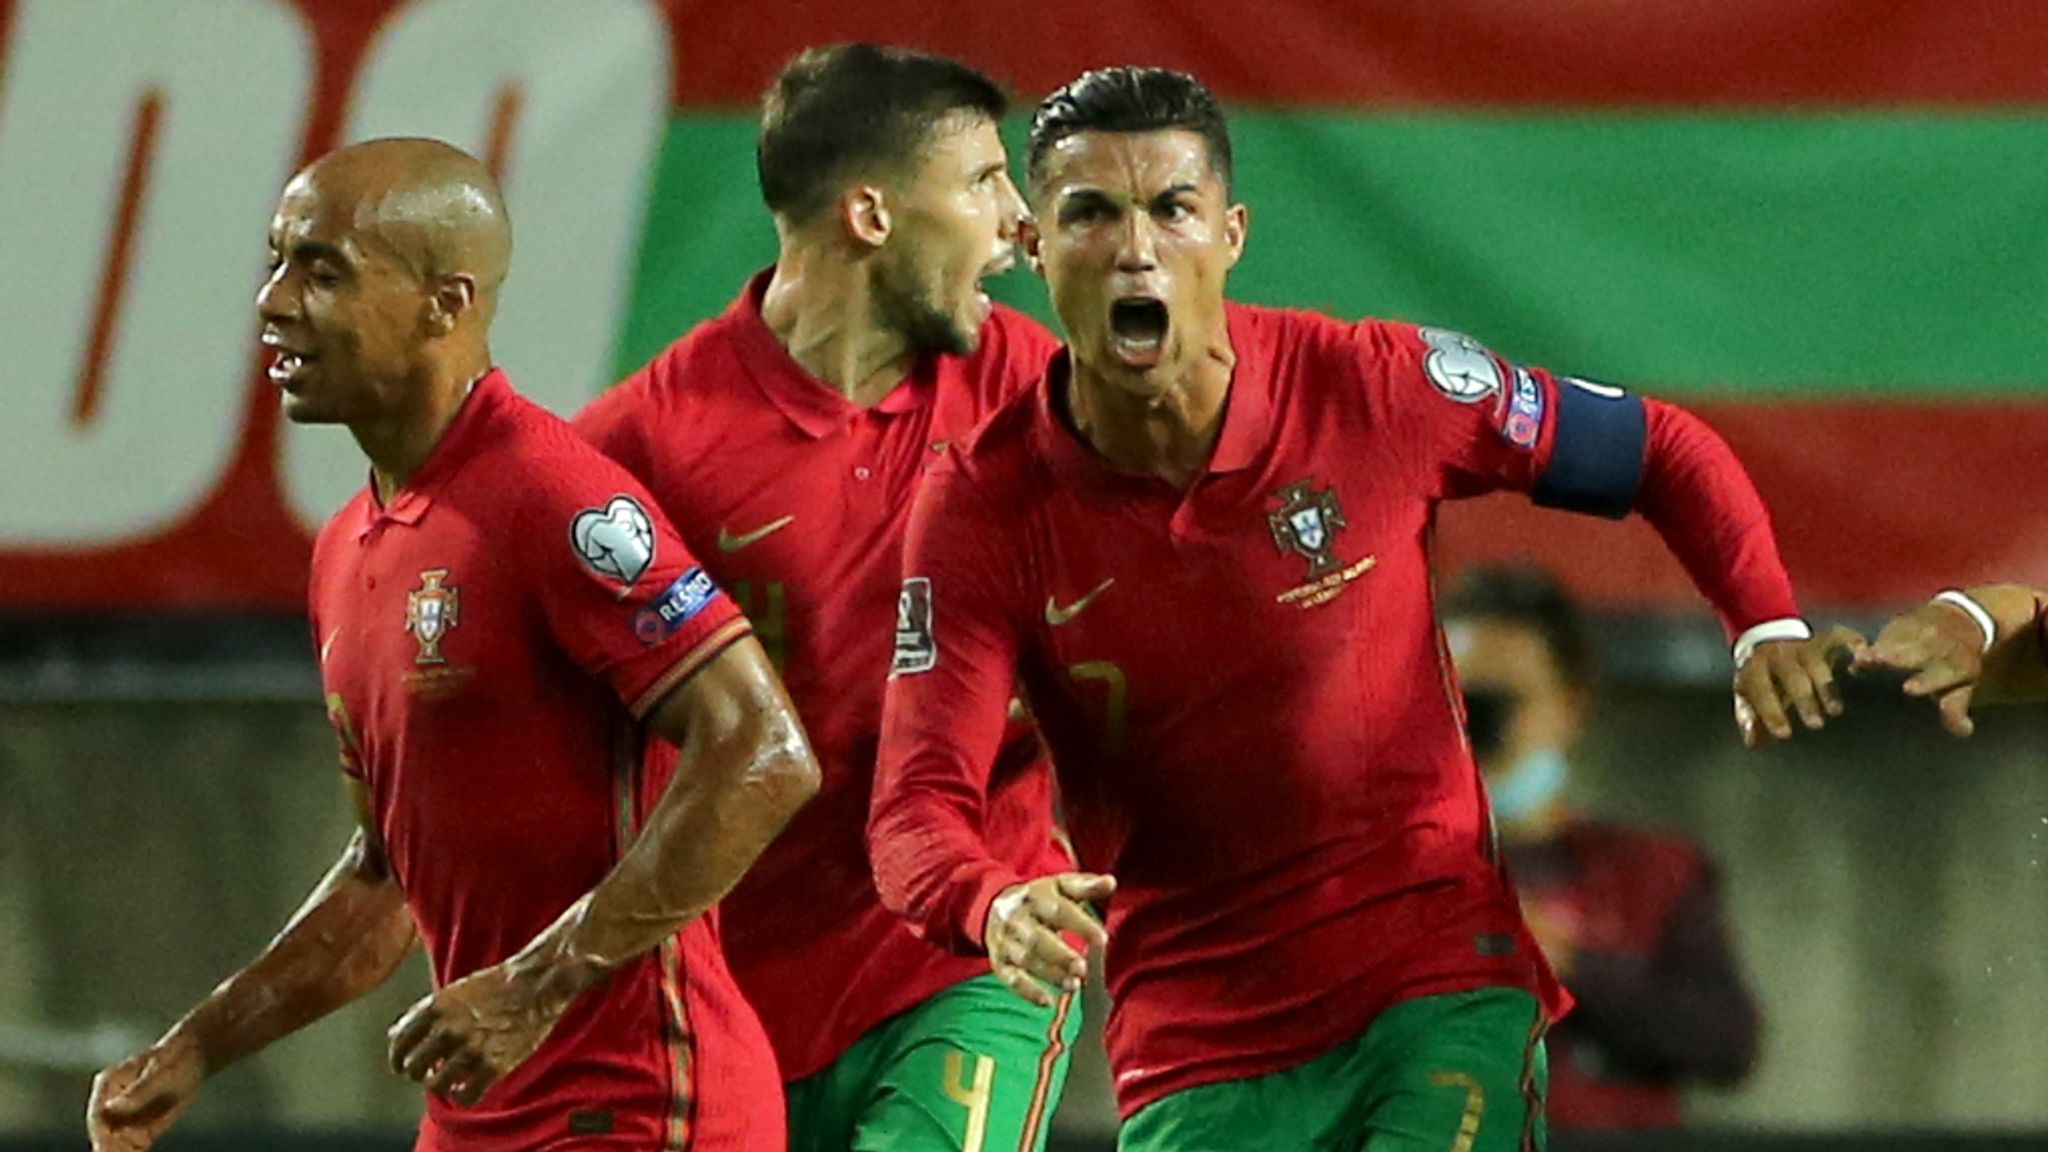 Liga Portugal 2 🇵🇹 - the KA - Global Rating